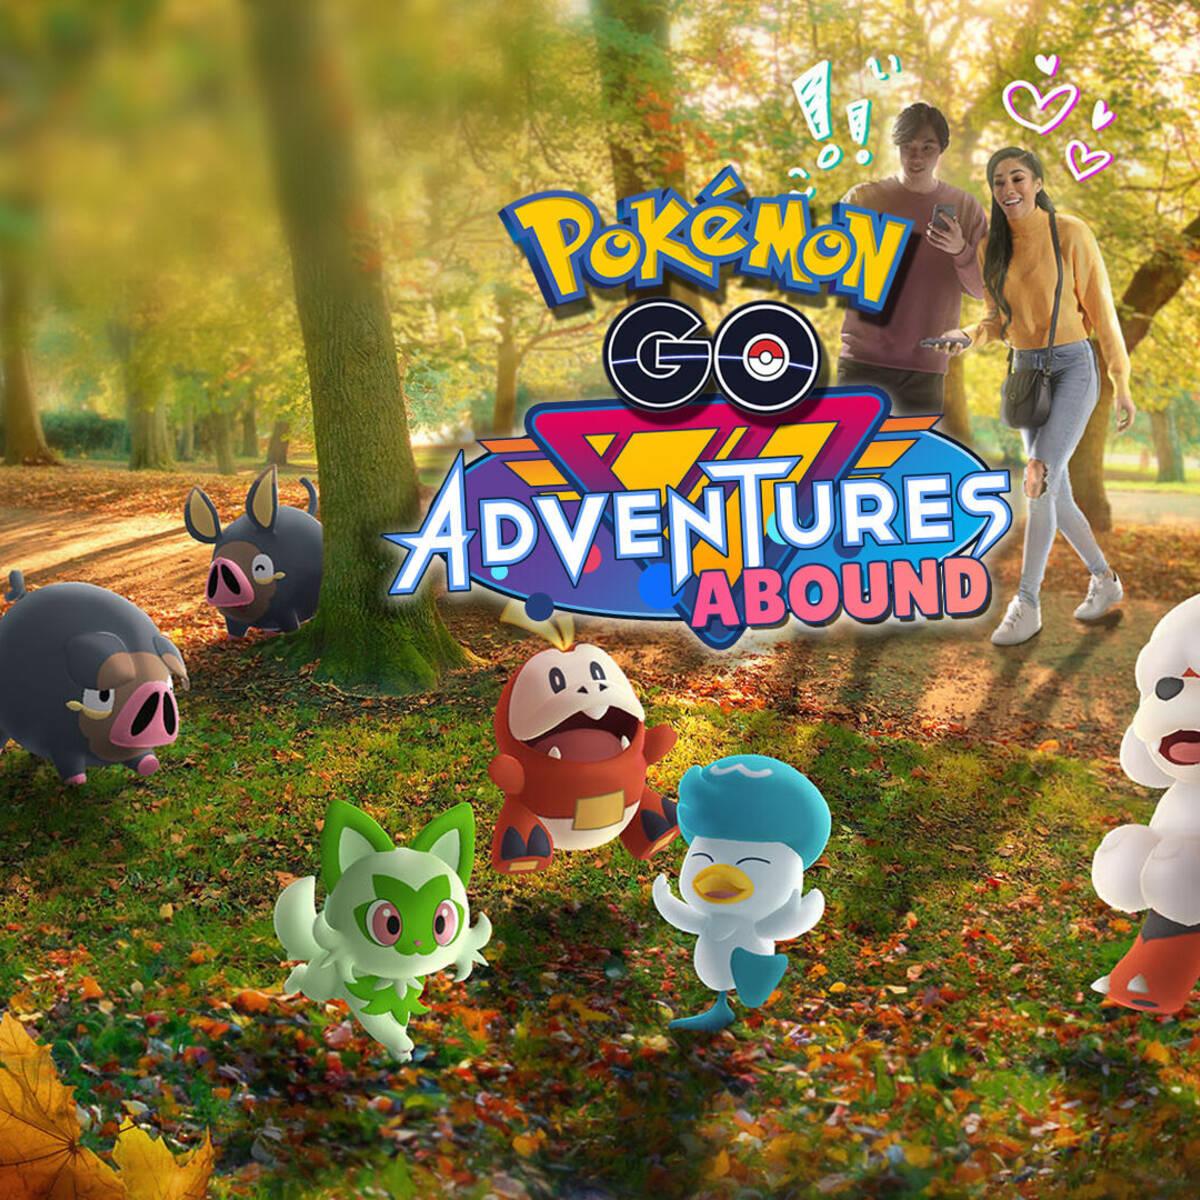 Pokémon GO revela cuándo llegarán los Pokémon de Paldea y cuántos serán